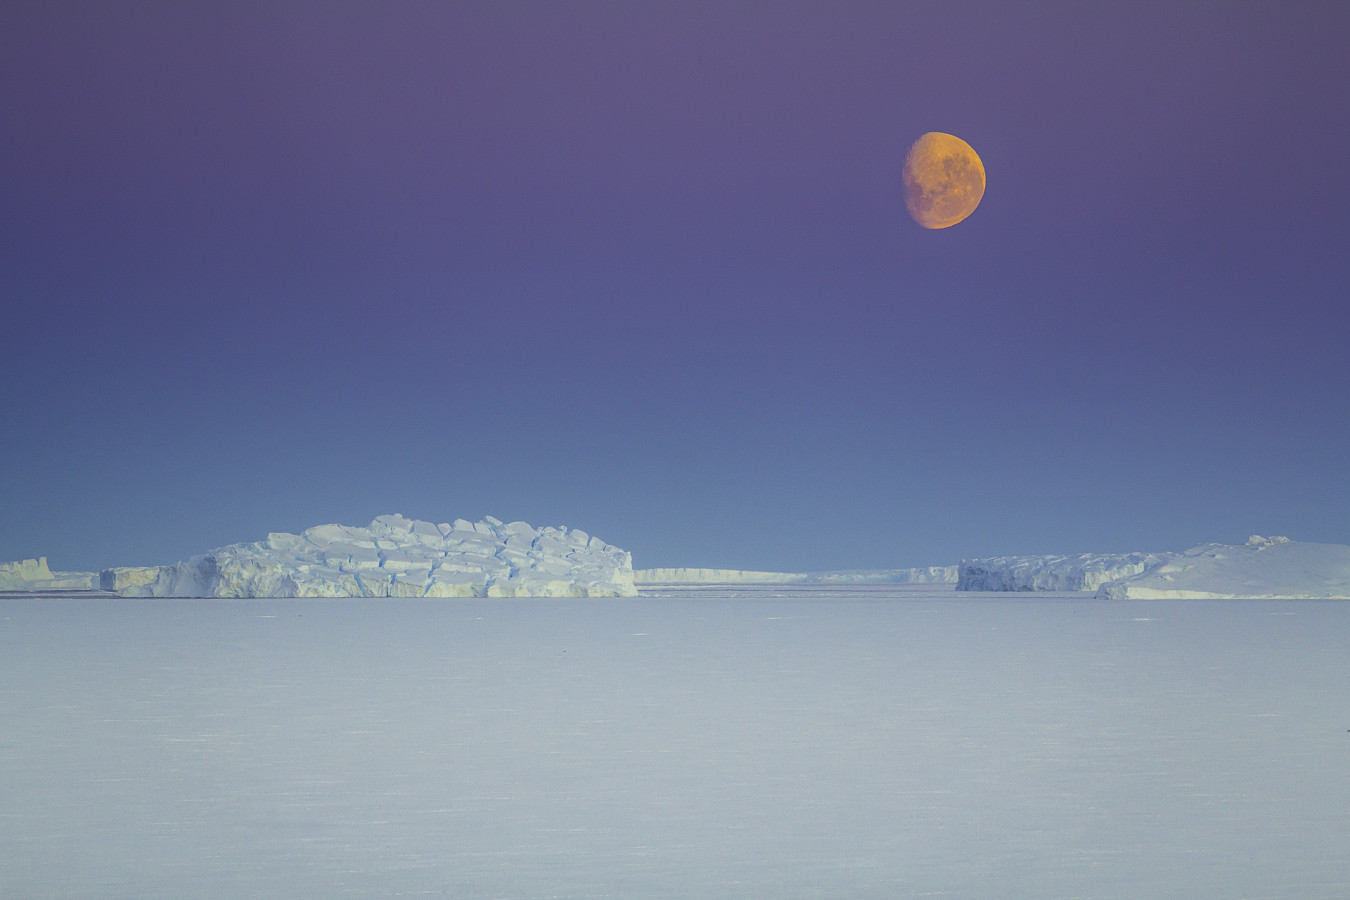 Лунно-ледяное безмолвие. Фото: Дмитрий Резвов, участник фотоконкурса РГО 